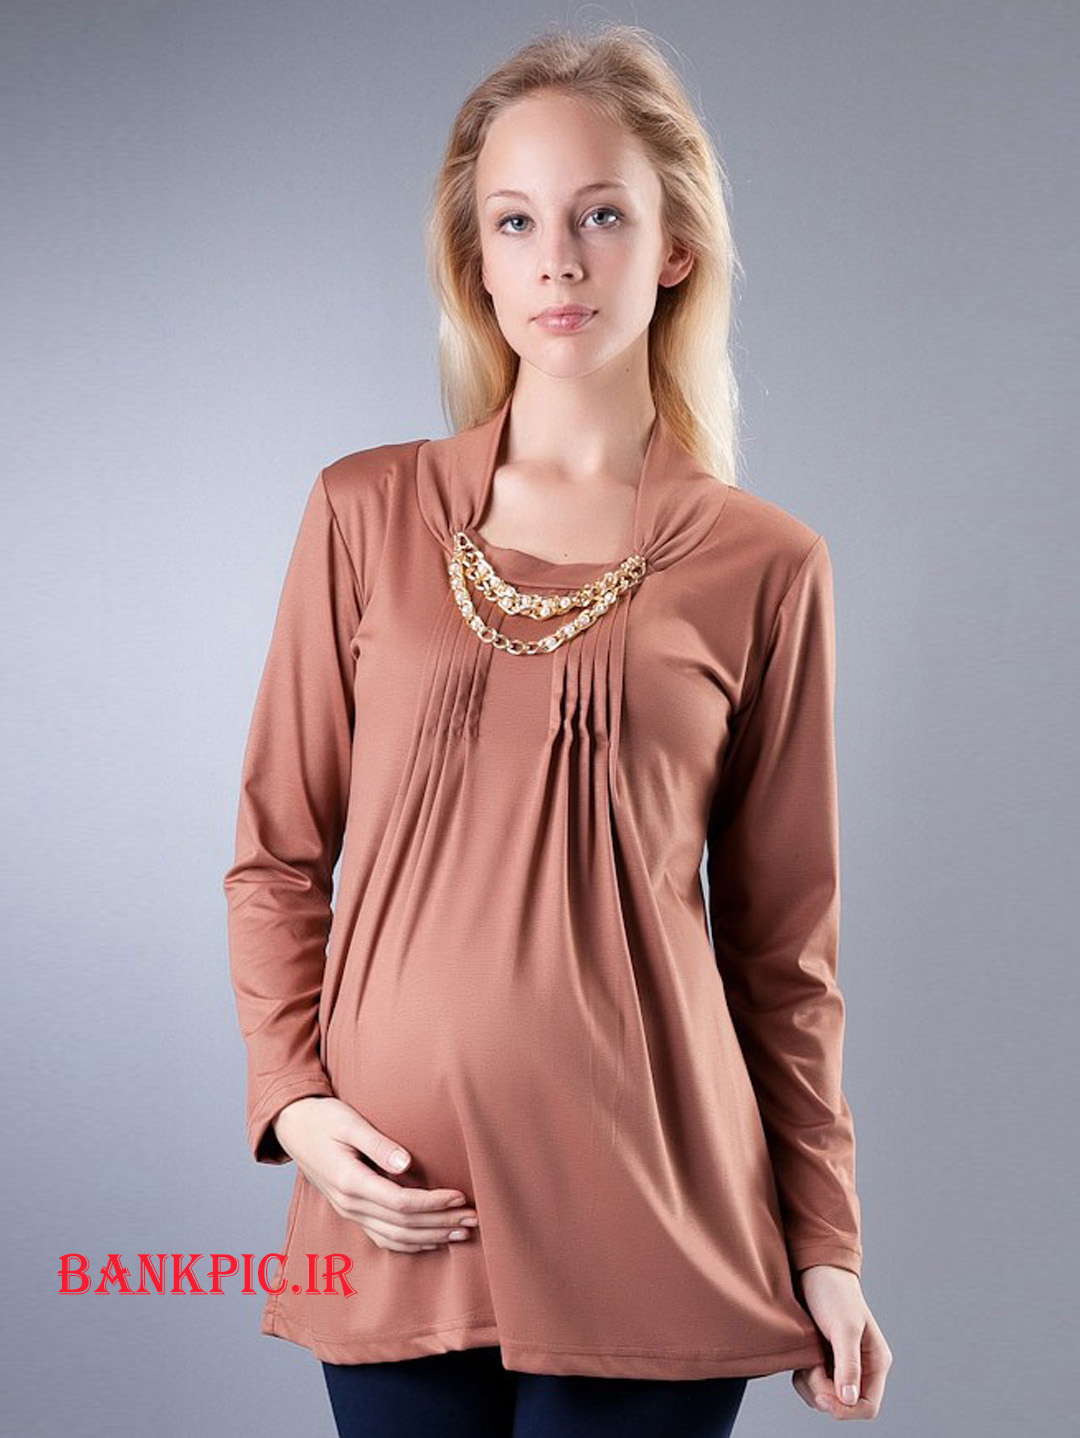 لباس بارداری مدل لباس بارداری , انواع لباس بارداری , لباس حاملگی , لباس حاملگی 2014 , لباس بارداری 2014 , جدیدترین لباس بارداری , لباس مجلسی بارداری , لباس اسپرت بارداری